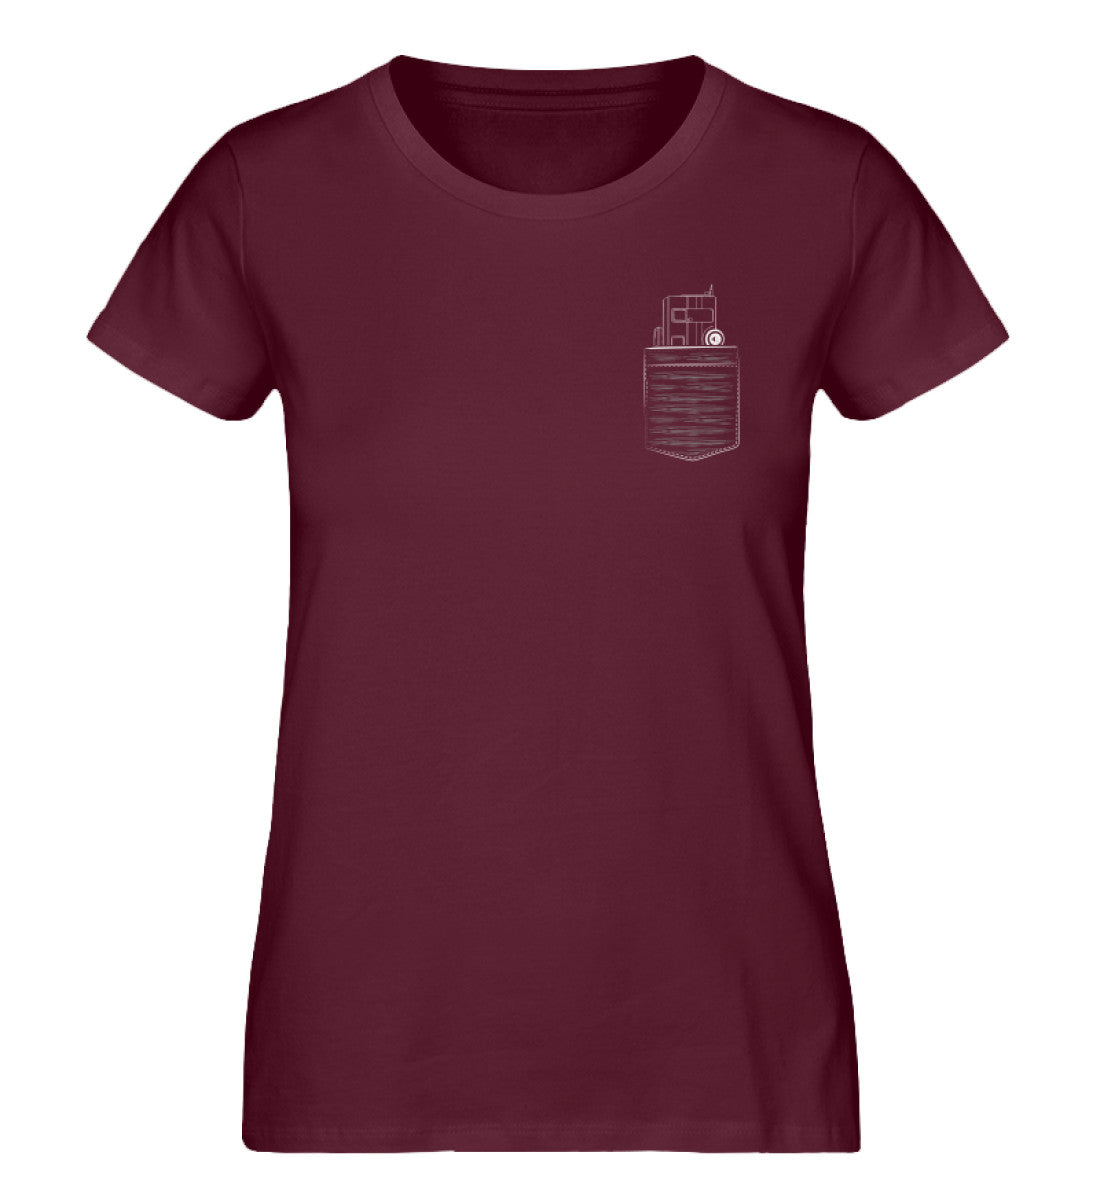 Camper in Brusttasche - Damen Organic T-Shirt camping Weinrot